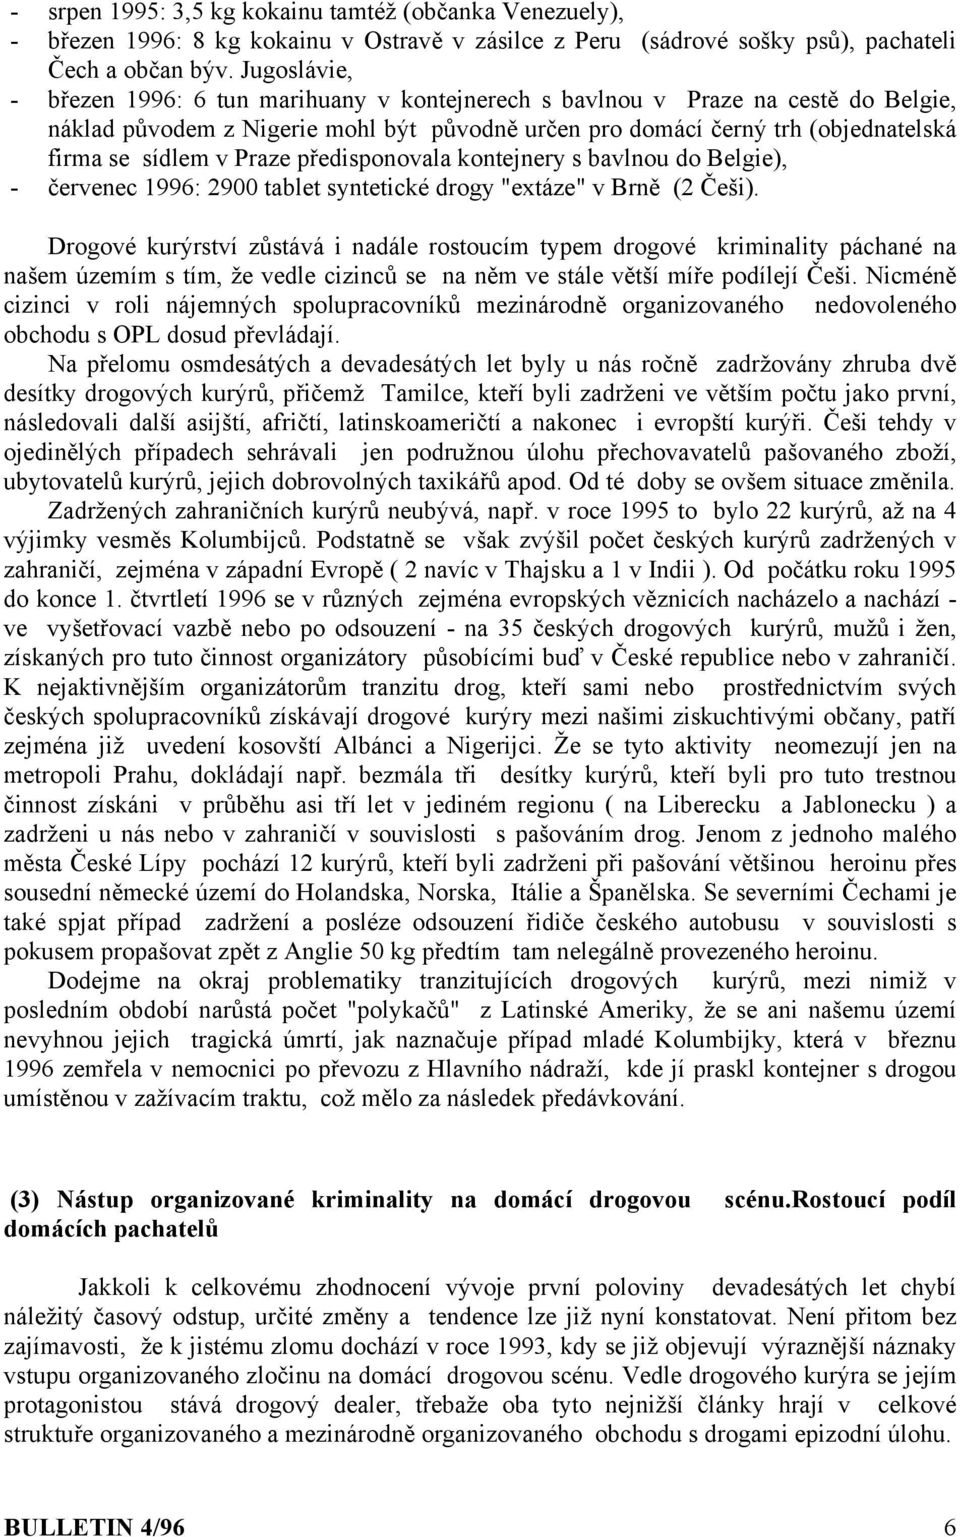 Praze předisponovala kontejnery s bavlnou do Belgie), - červenec 1996: 2900 tablet syntetické drogy "extáze" v Brně (2 Češi).